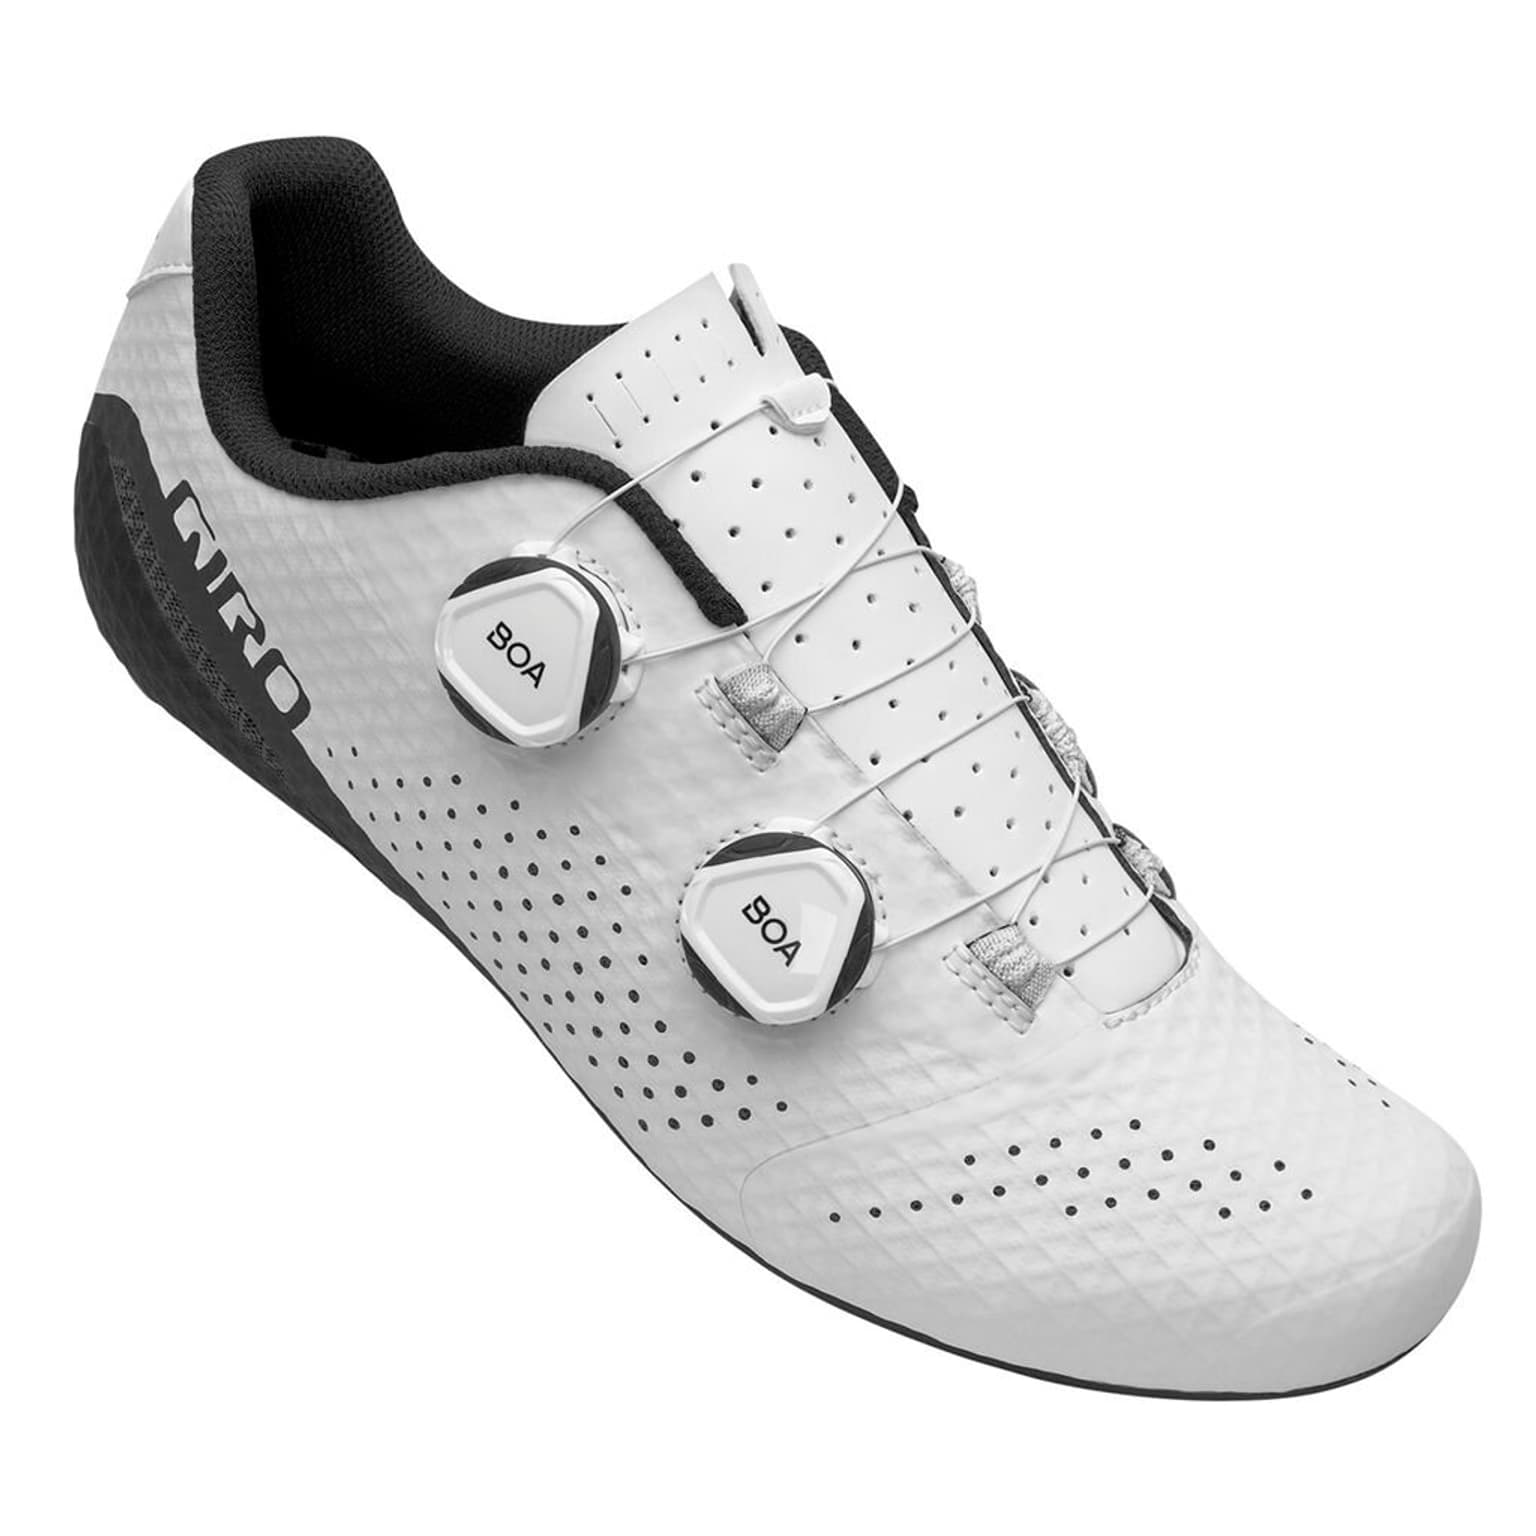 Giro Giro Regime Shoe Chaussures de cyclisme blanc 2